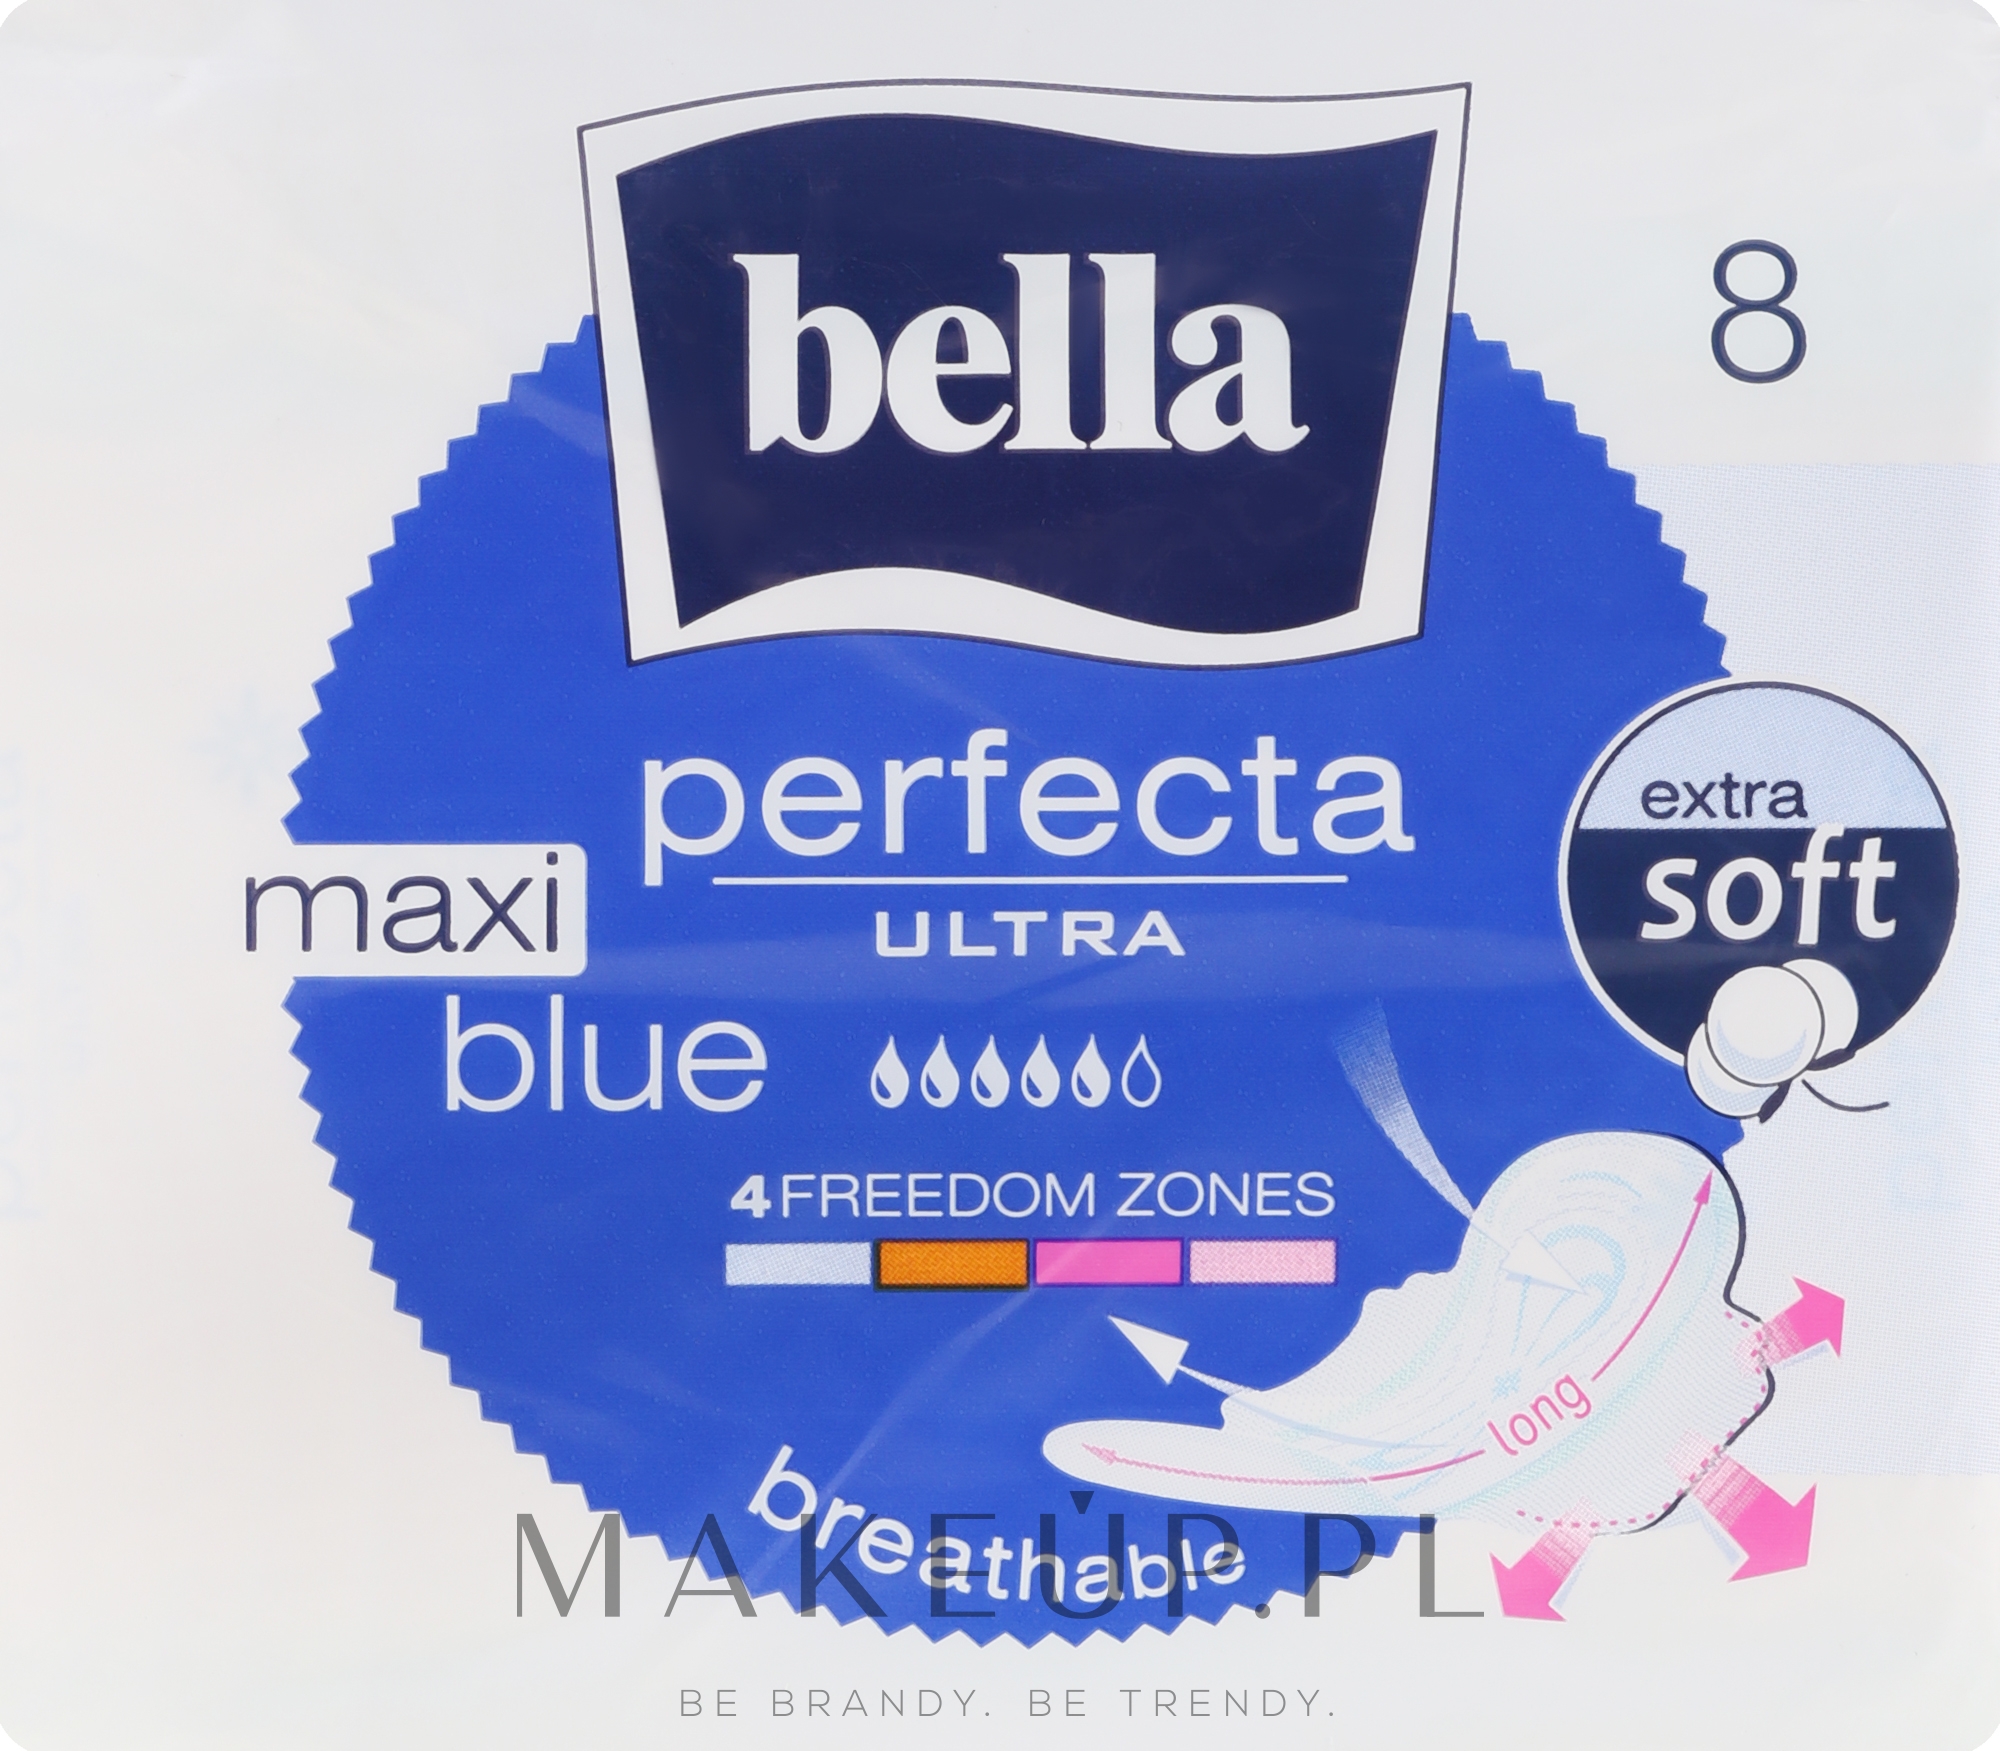 Podpaski, 8 szt. - Bella Perfecta Ultra Blue Maxi — Zdjęcie 8 szt.